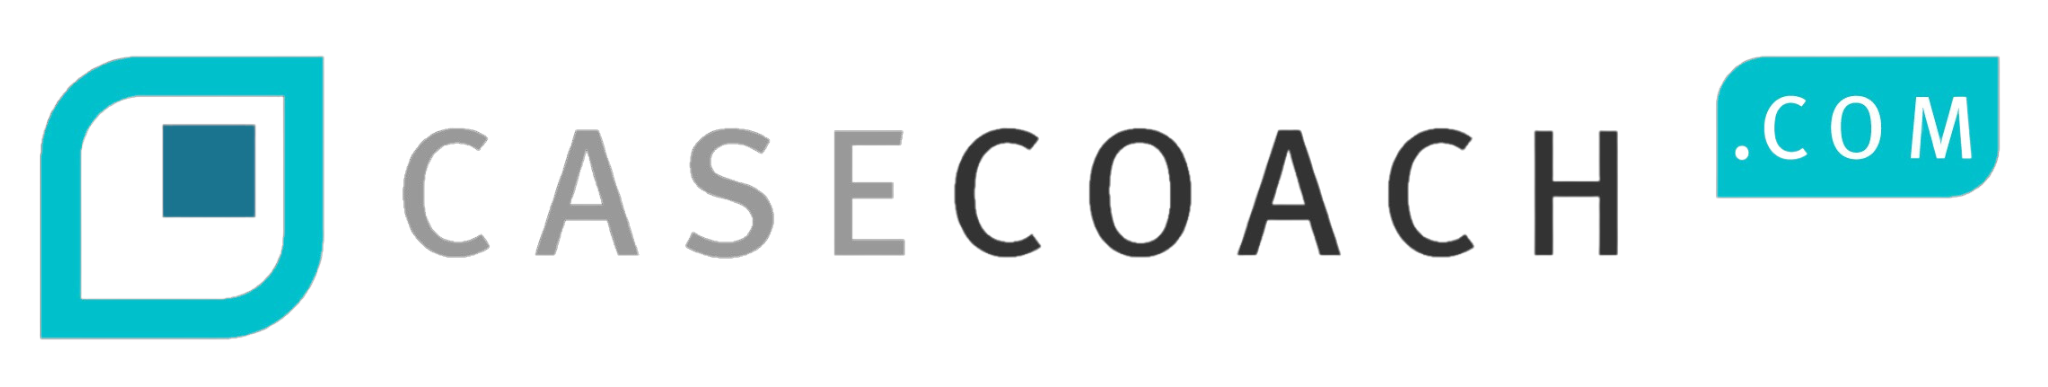 CaseCoach logo